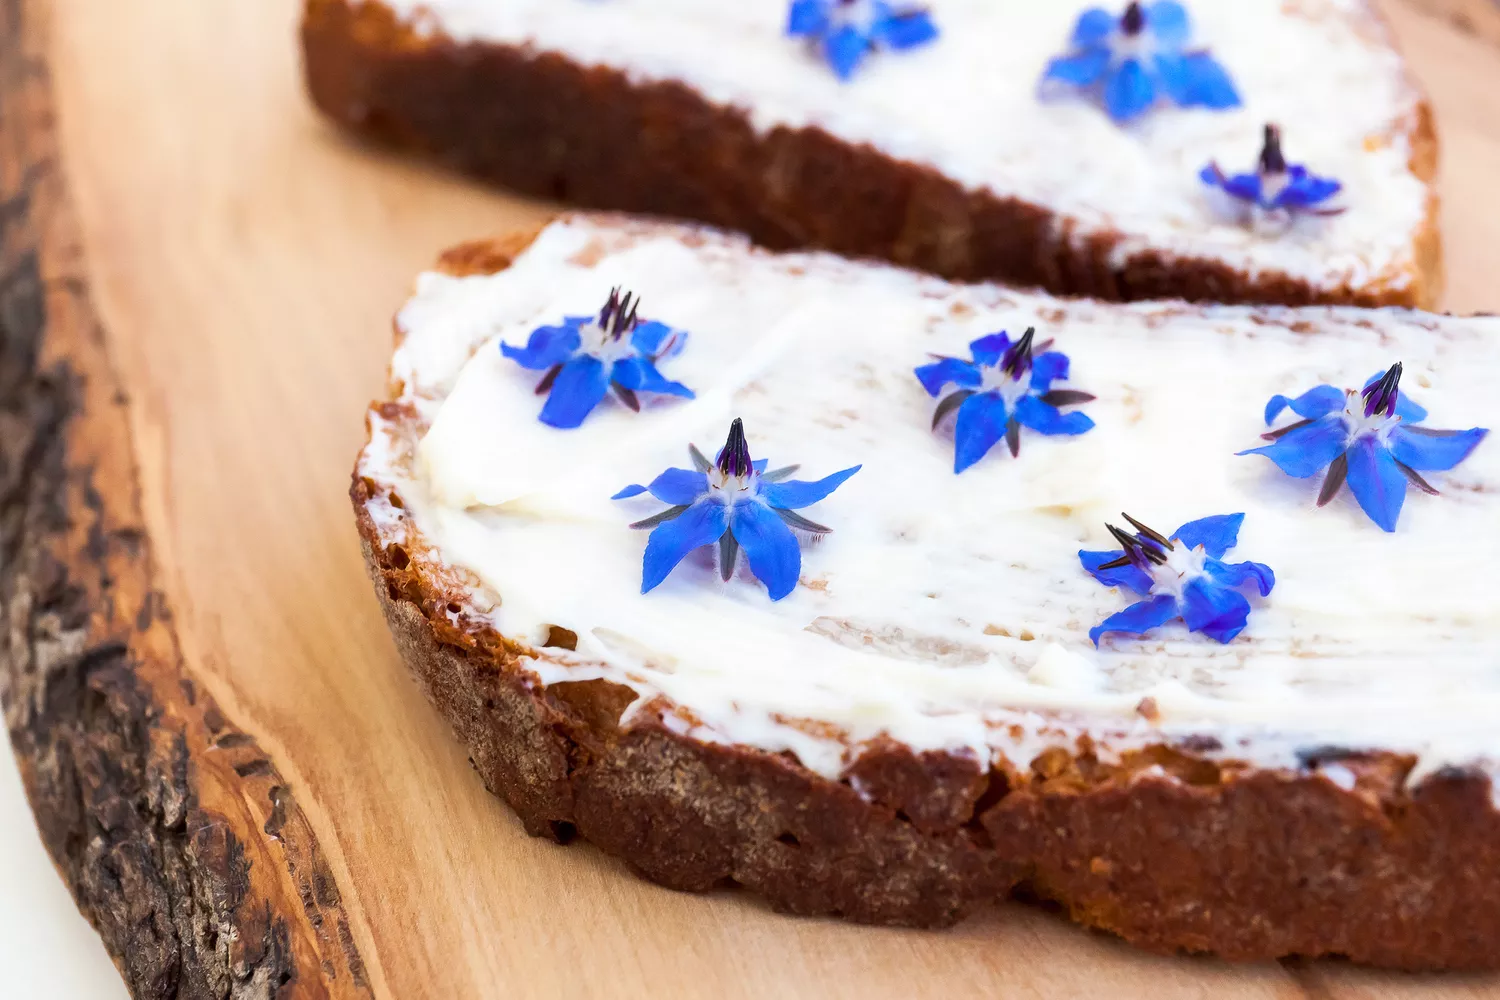 Borage edible flowers on toast